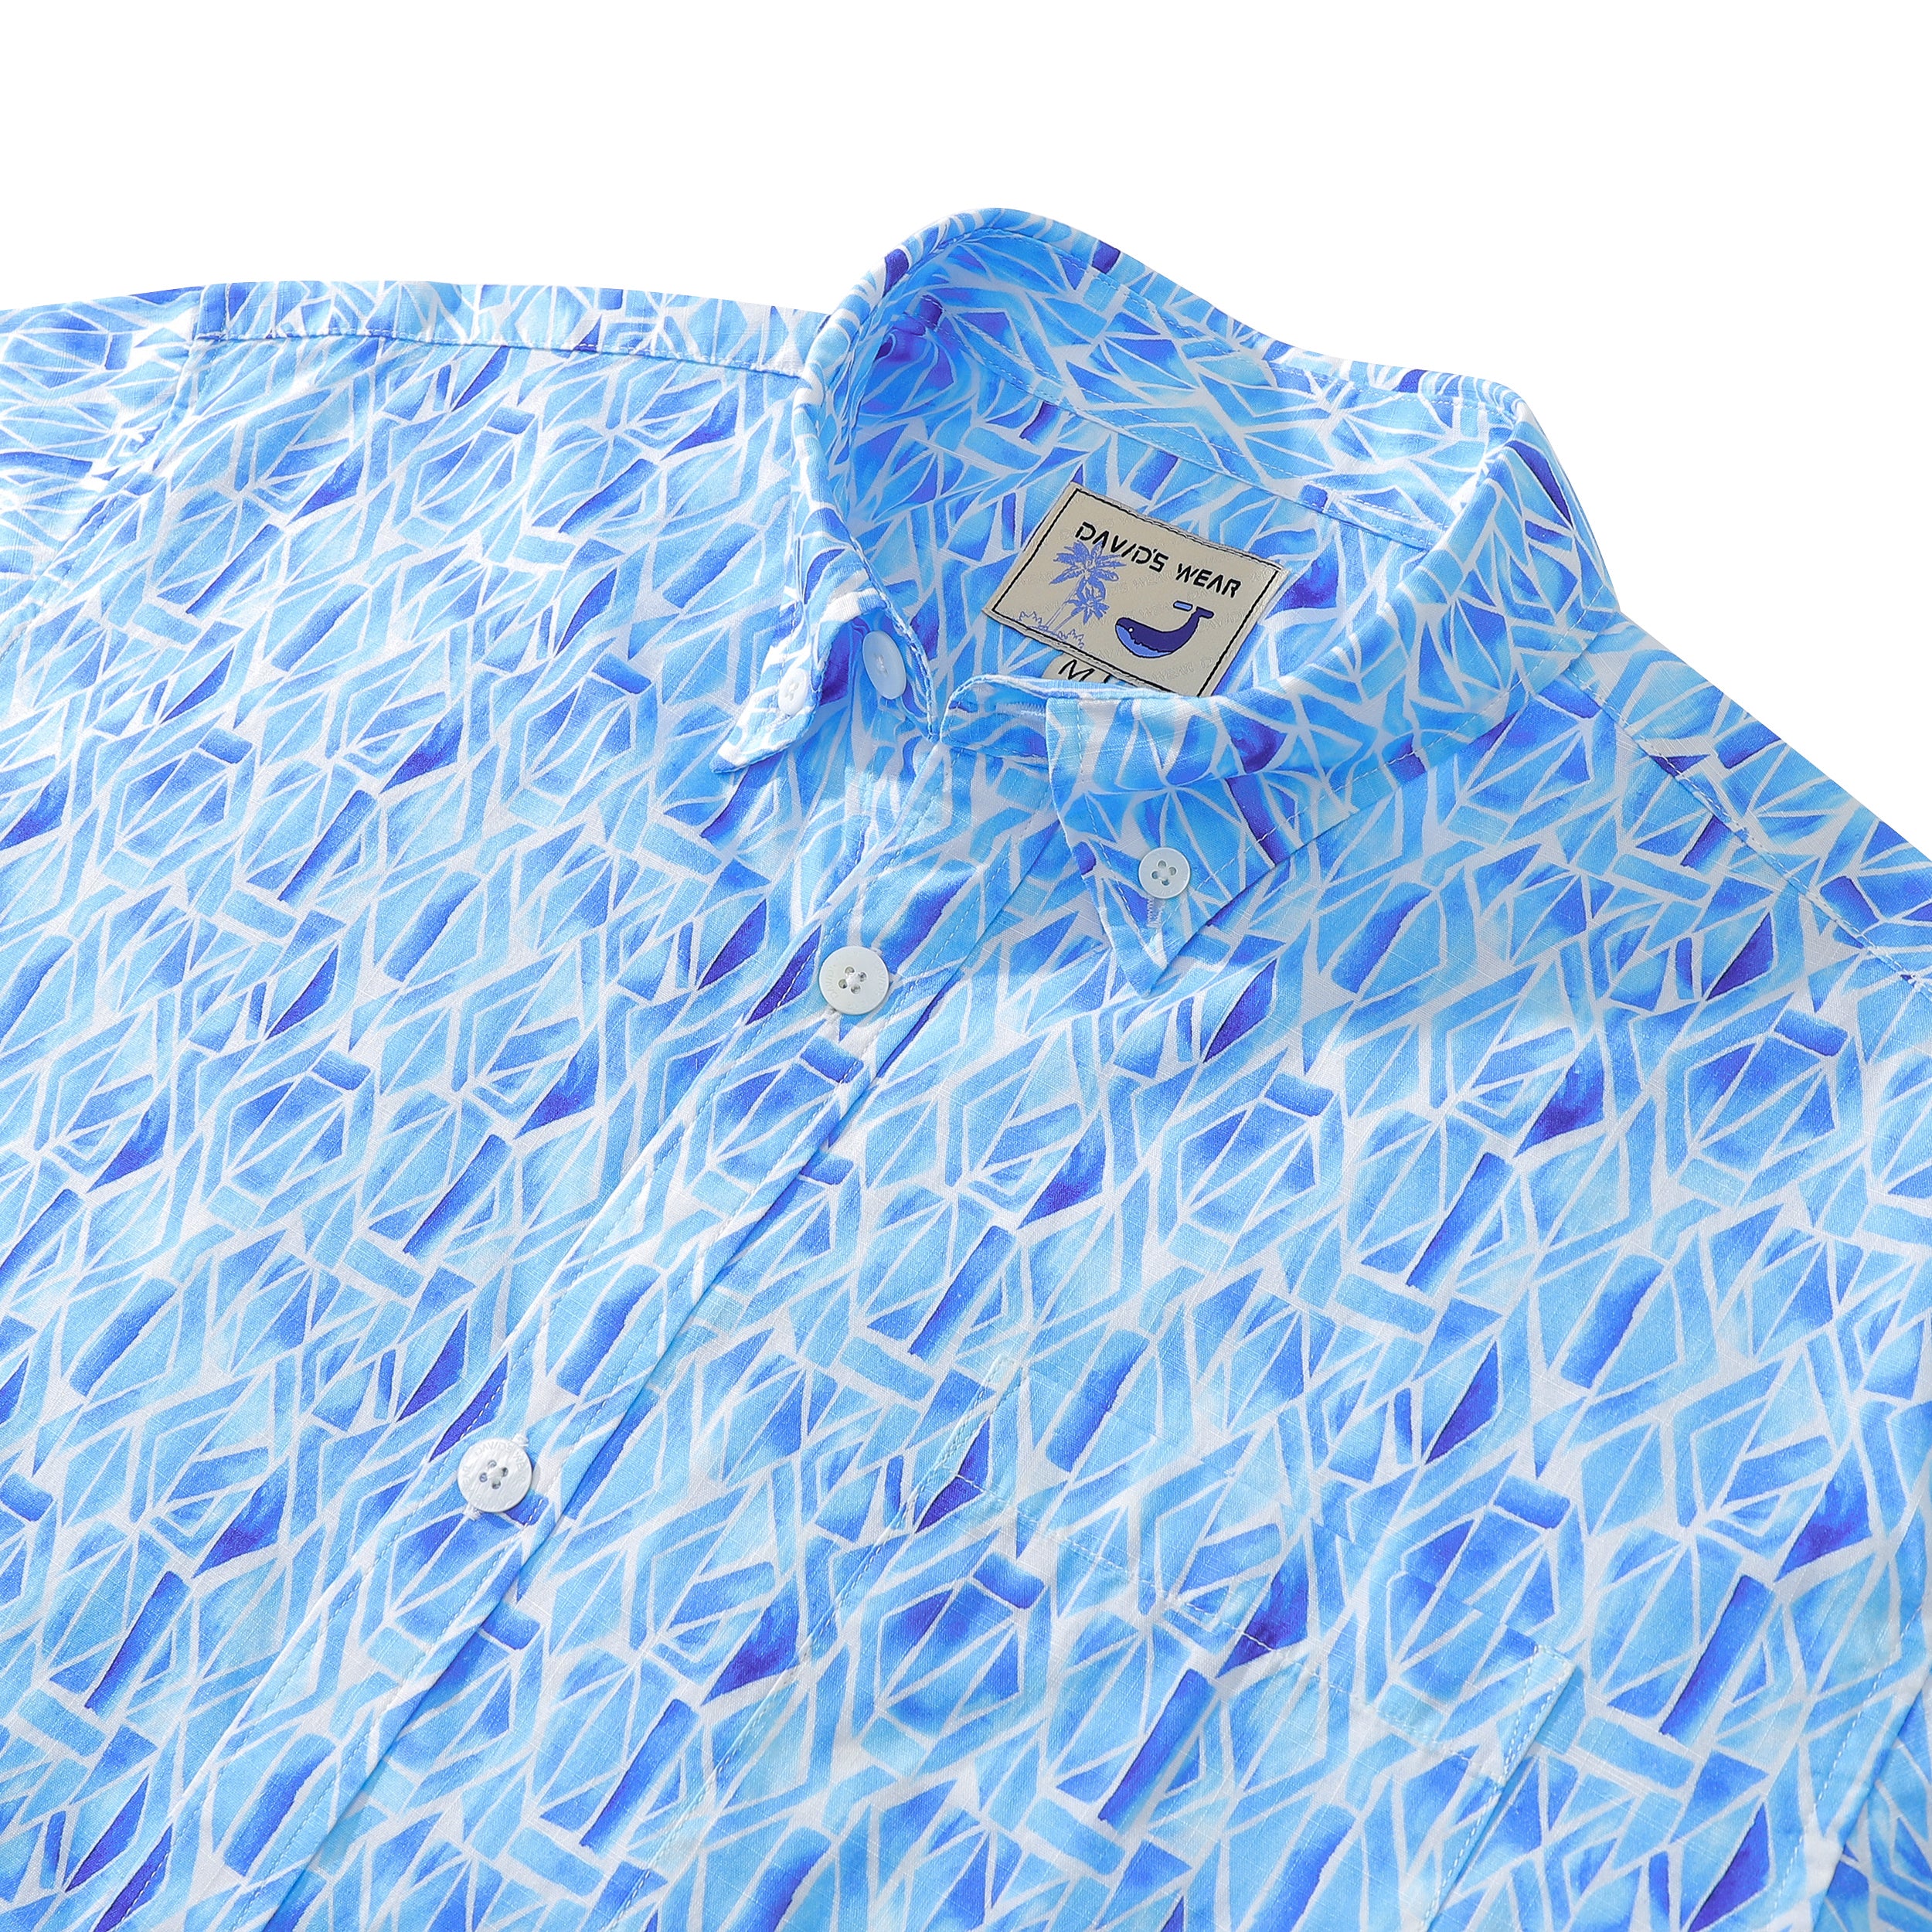 Men's Short Sleeve Shirt Men Hawaii Blue Geometry Print Cotton Button Down